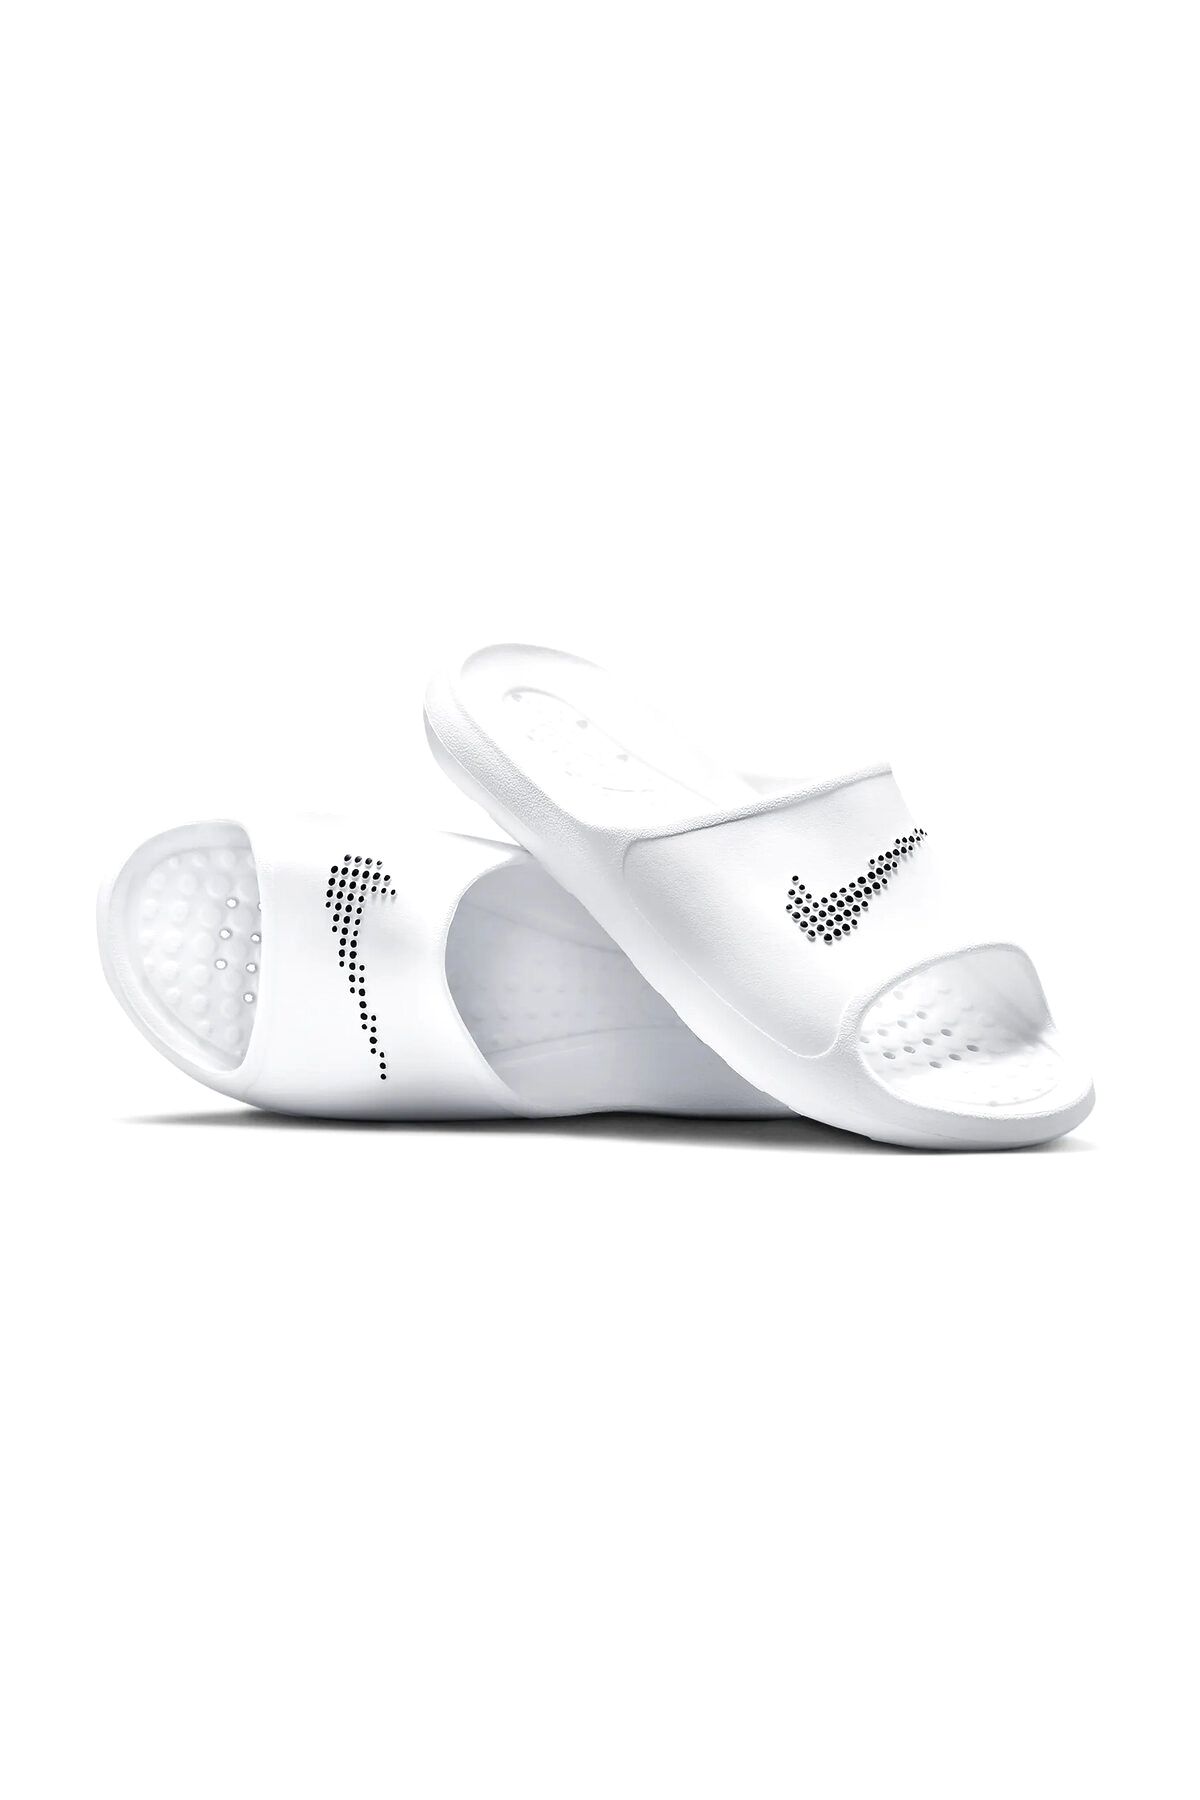 Nike Victori One Erkek Terlik Ayakkabı Cz5478-100-beyaz